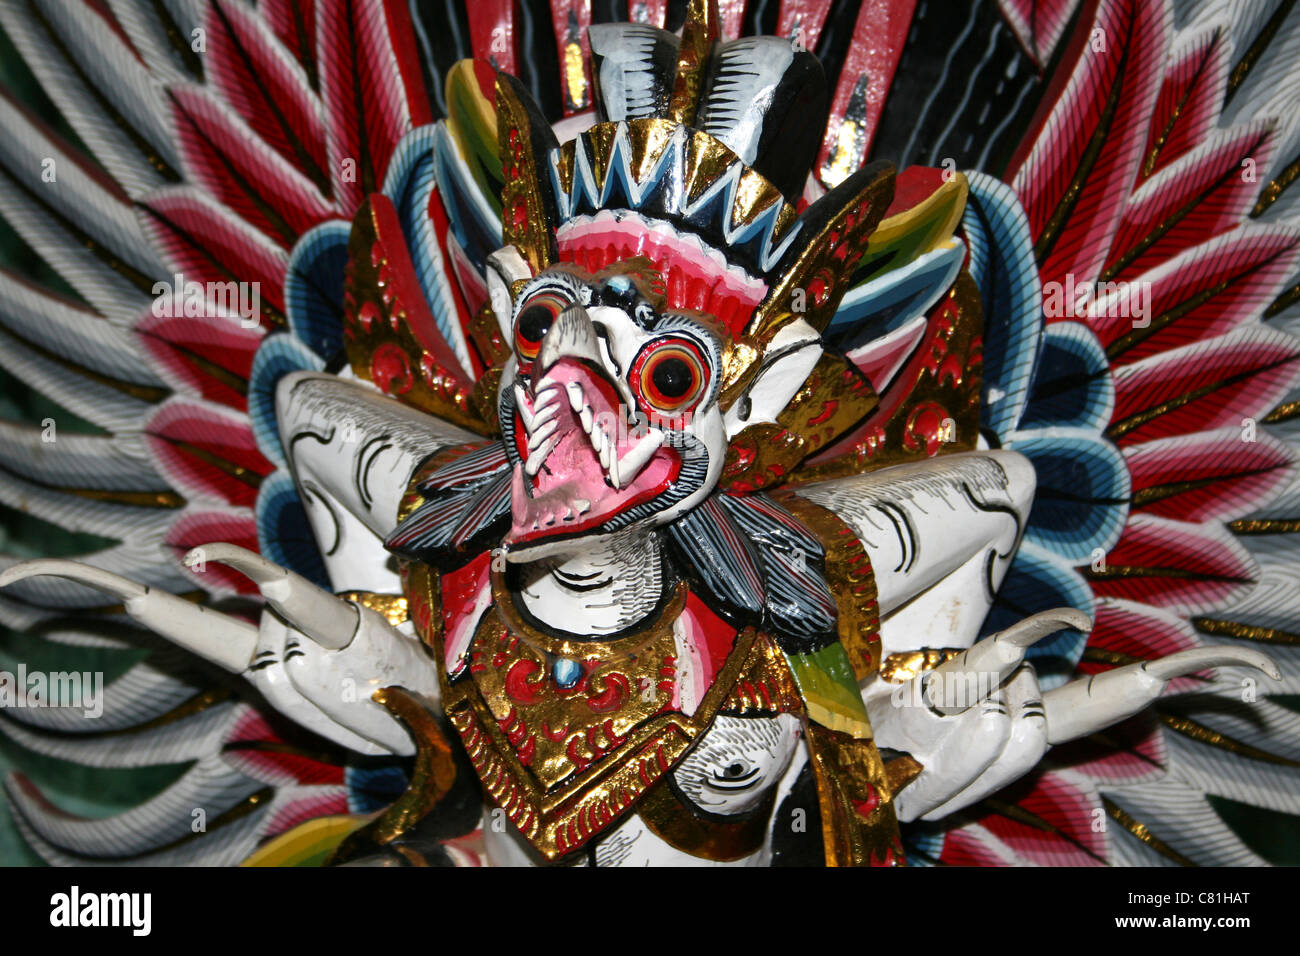 Garuda peint de couleurs vives, de sculpter la mythologie hindoue Banque D'Images